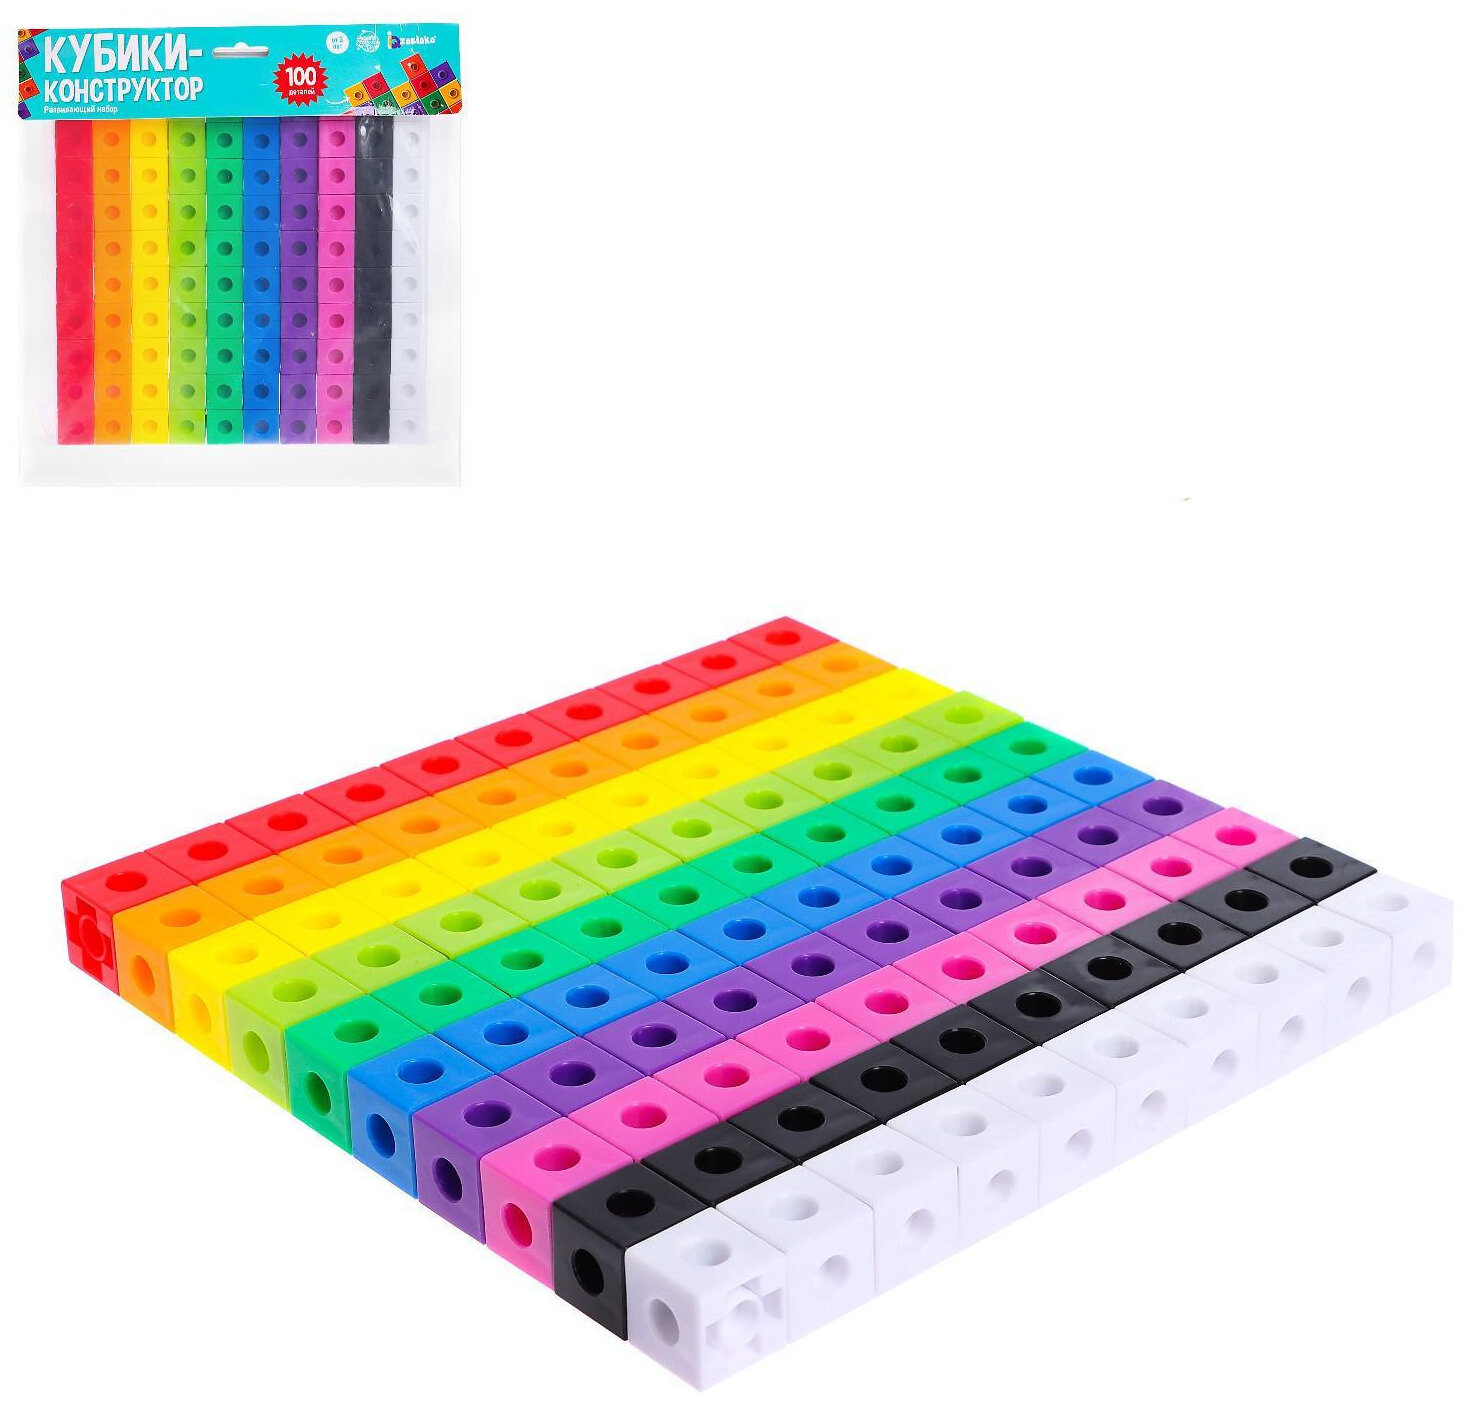 Развивающий пластиковый конструктор "Кубики" логический игровой набор из 100 деталей (10 цветов)